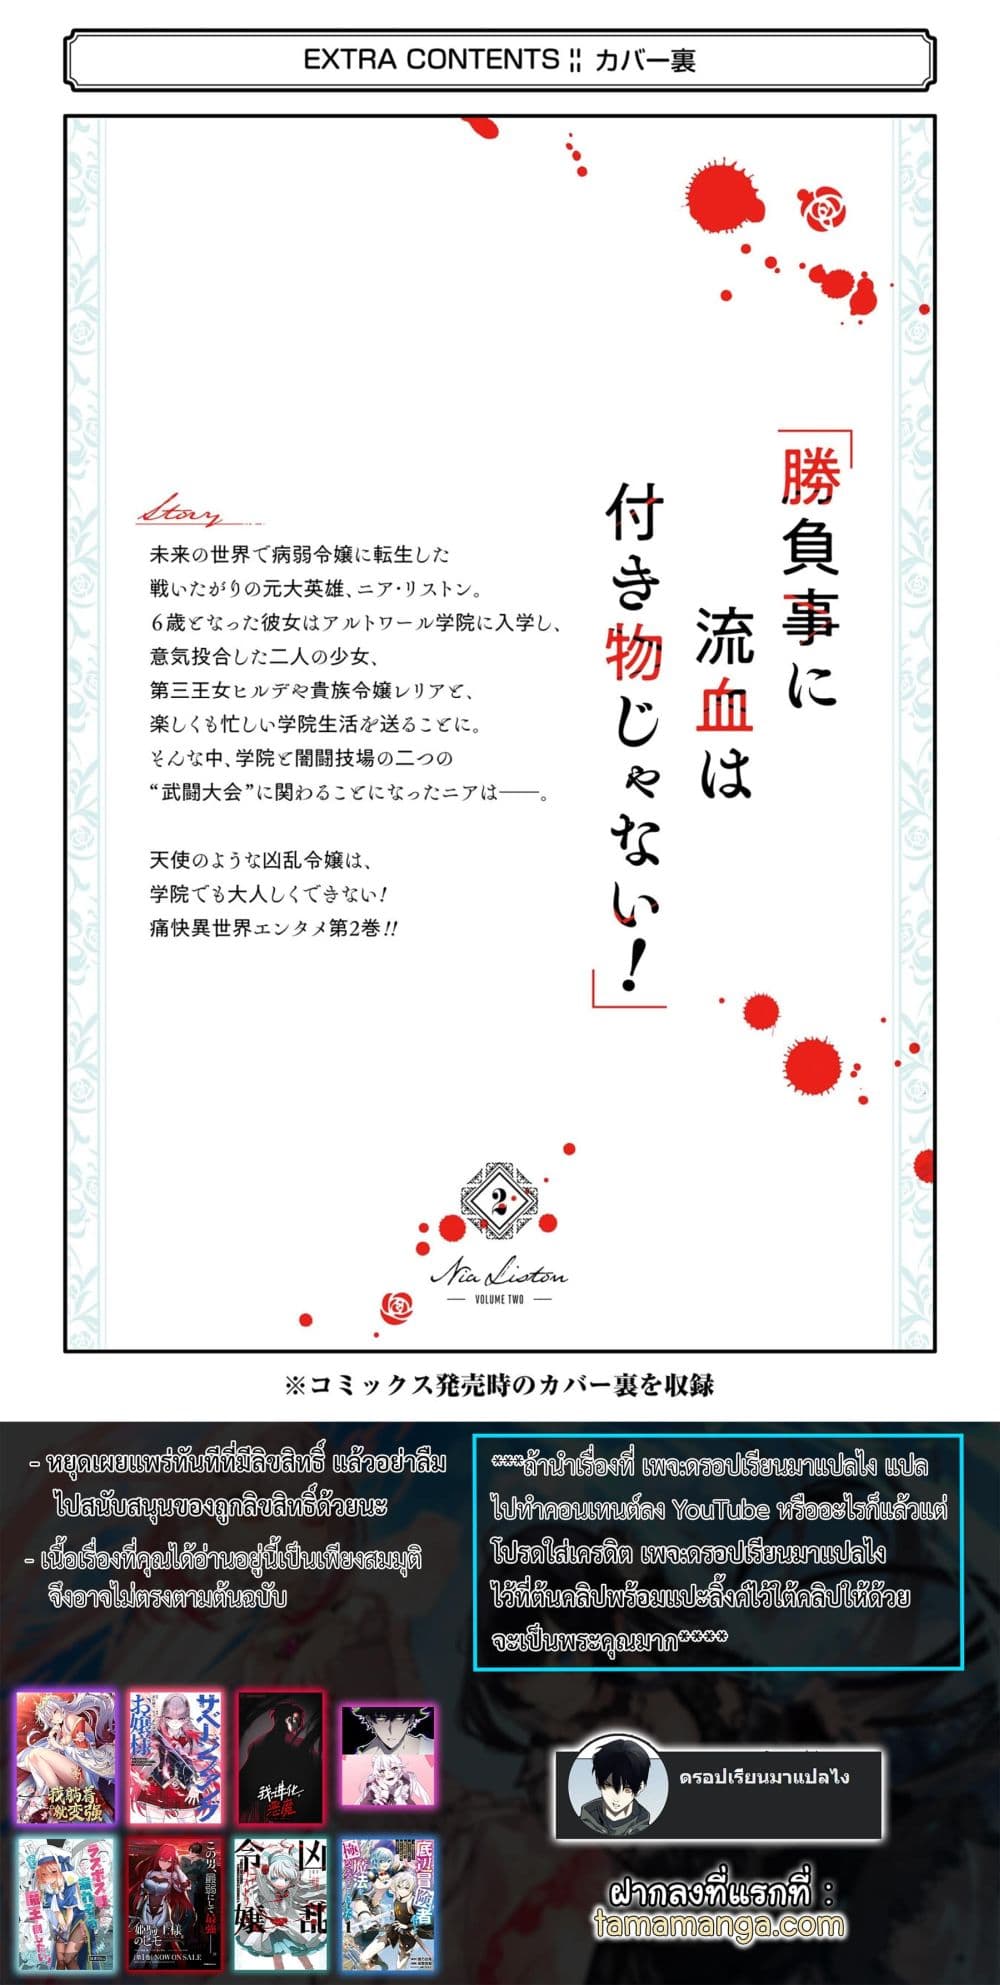 Kyouran Reijou Nia Liston - Byoujaku Reijou ni Tensei shita Kamigoroshi no Bujin no Karei Naru Musouroku 10-10